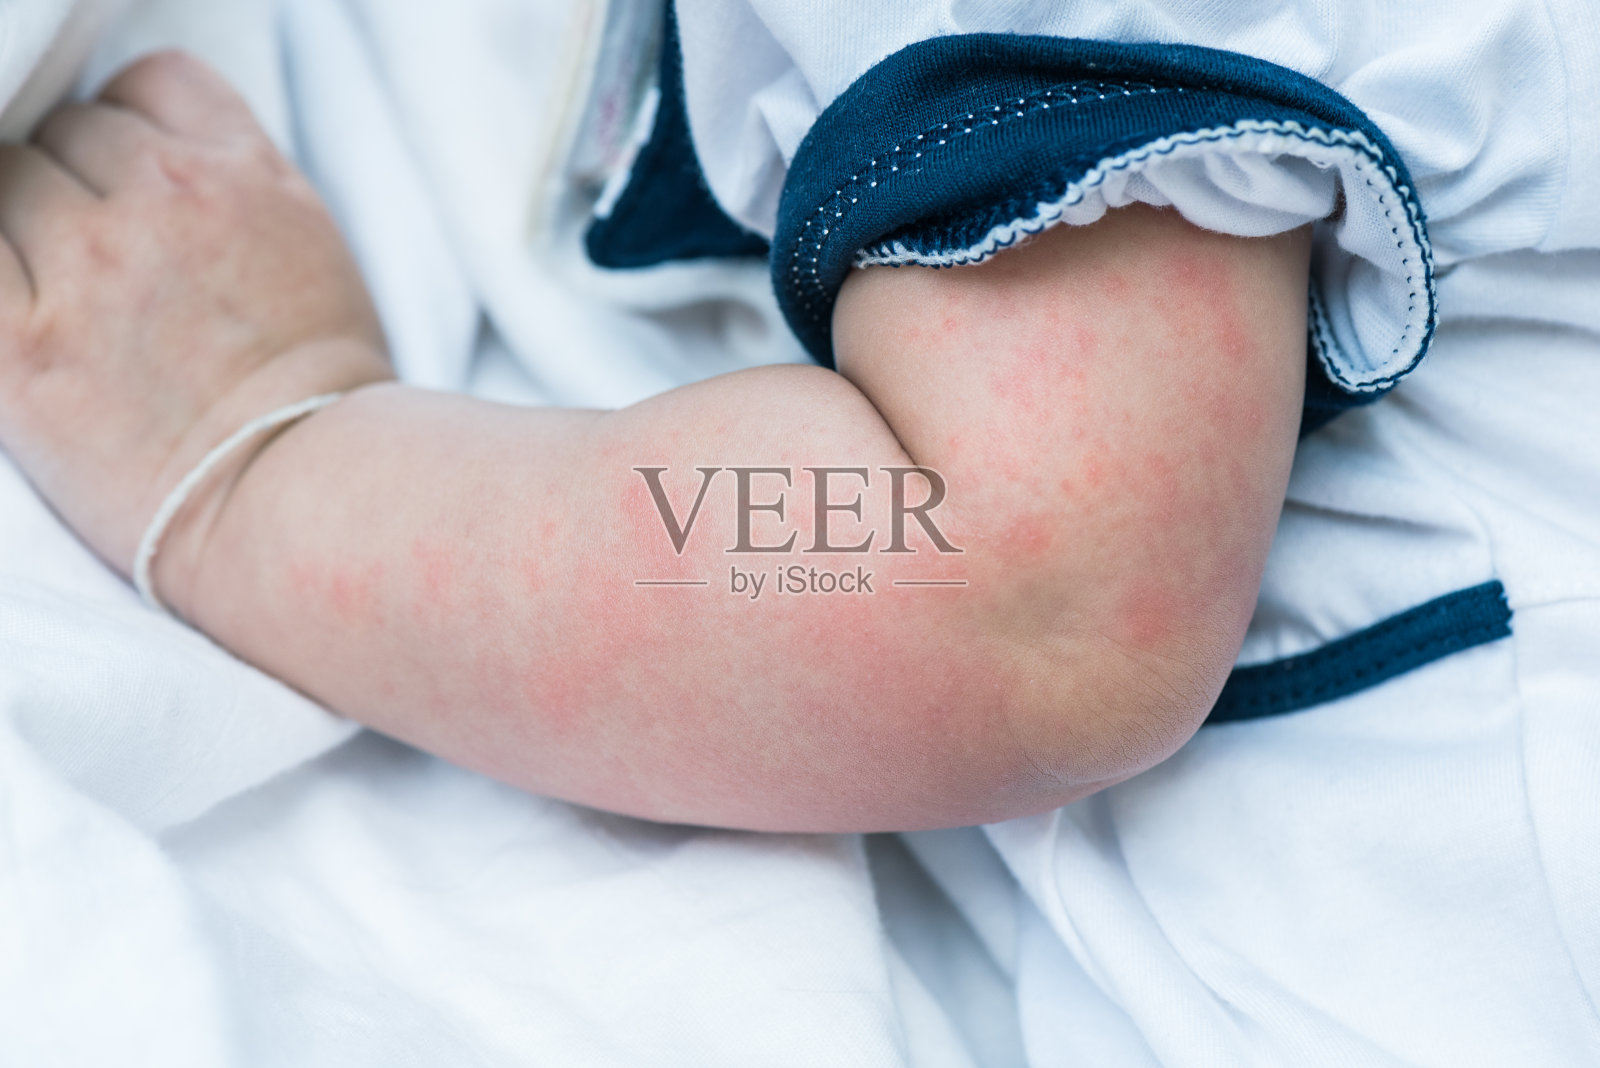 婴儿皮肤质地患严重荨麻疹、荨麻疹。照片摄影图片